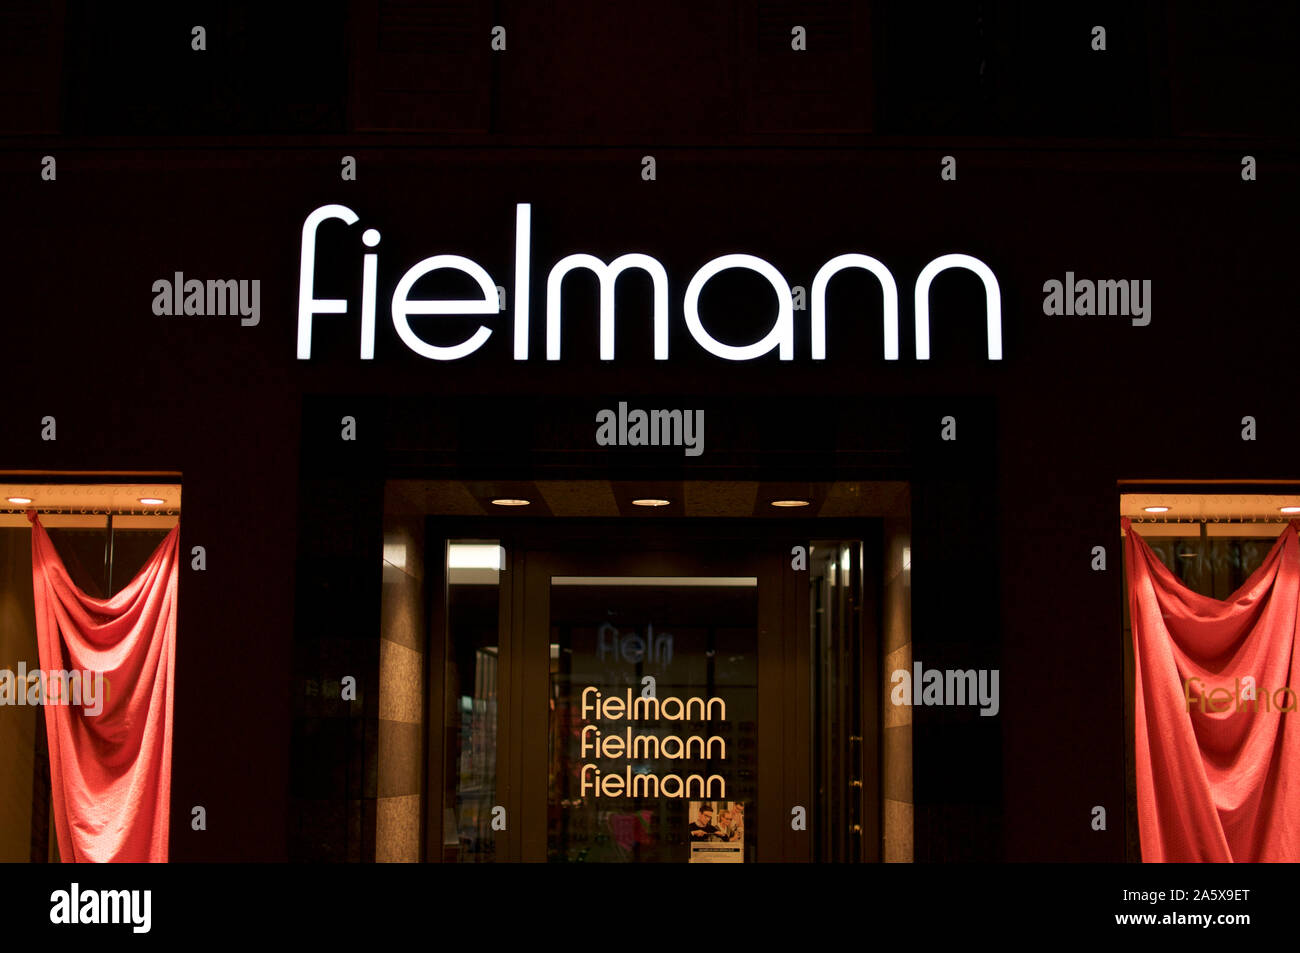 Fielmann Stockfotos und -bilder Kaufen - Alamy